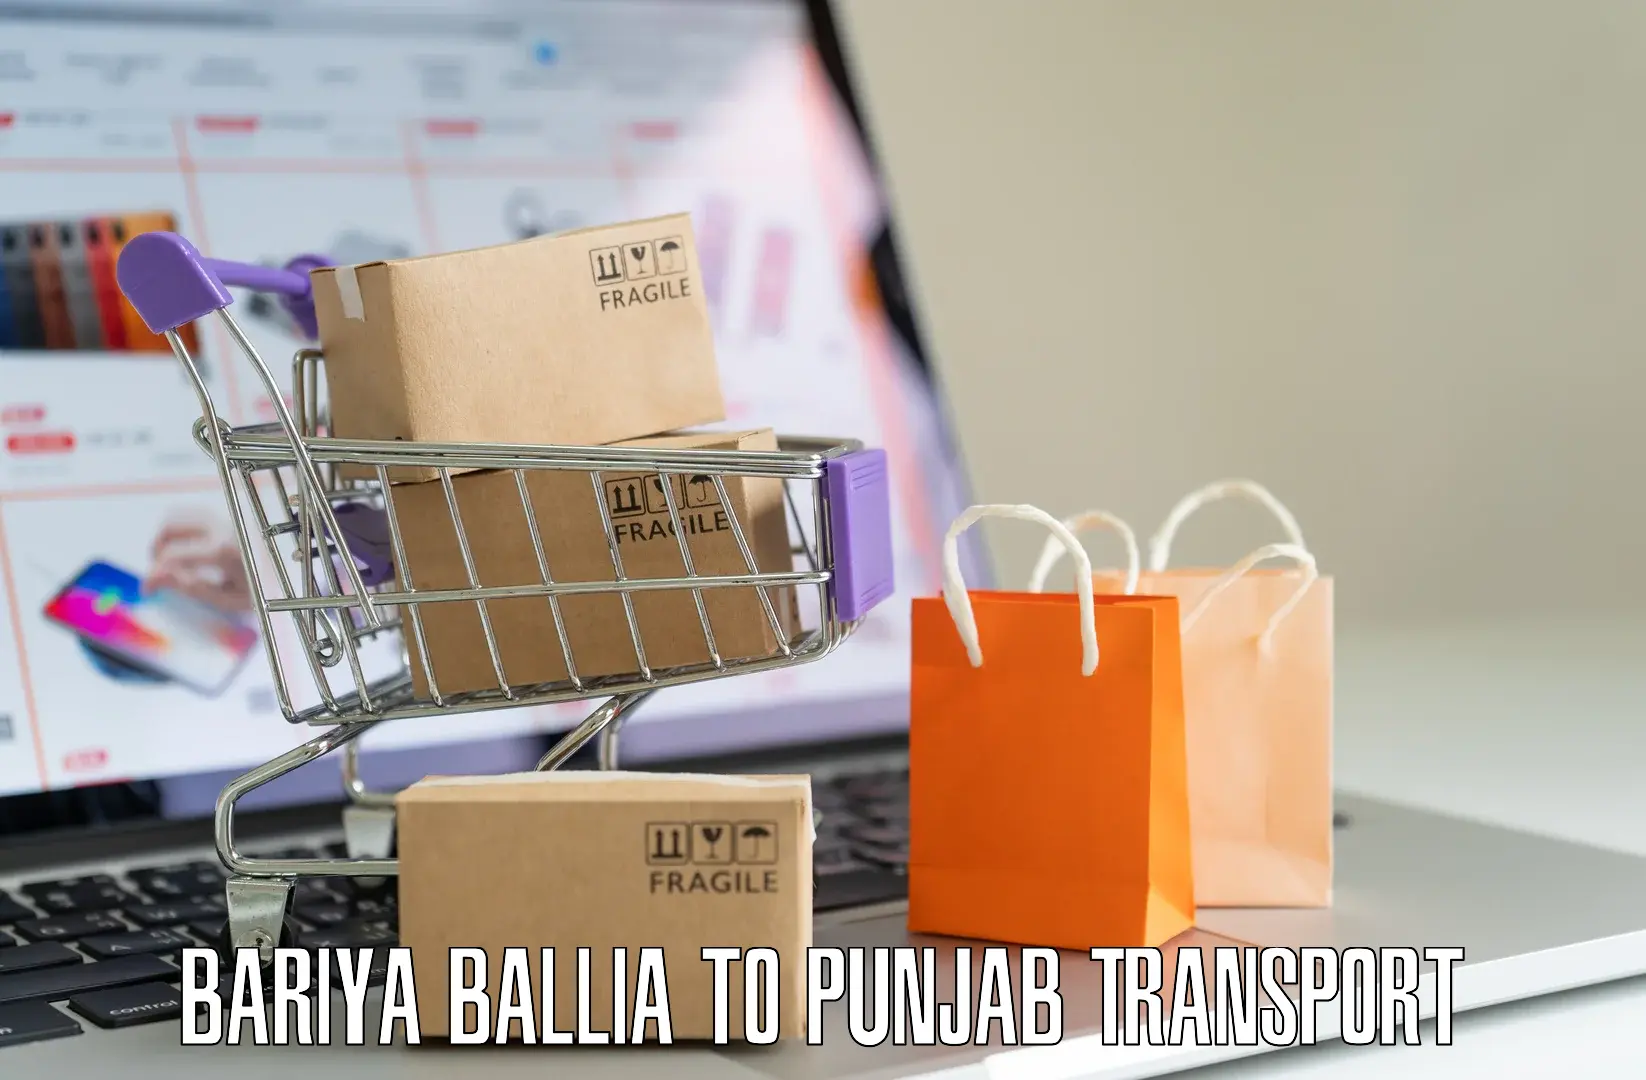 Cargo train transport services Bariya Ballia to Patti Tarn Tara